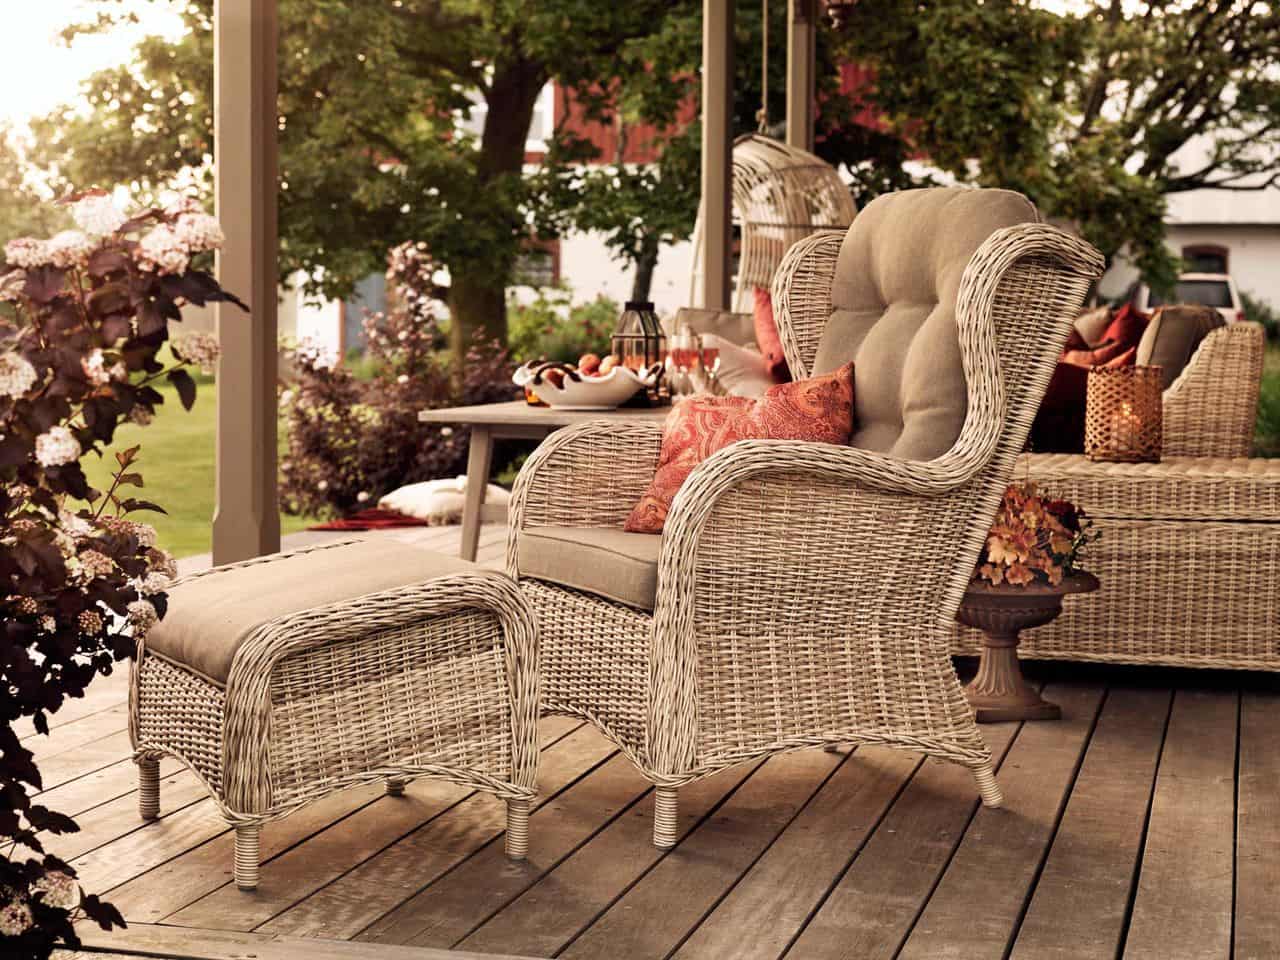 Білосніжна меблі з ротанга буде мати гарний вигляд у яскравому і насиченому оточенні вашого саду